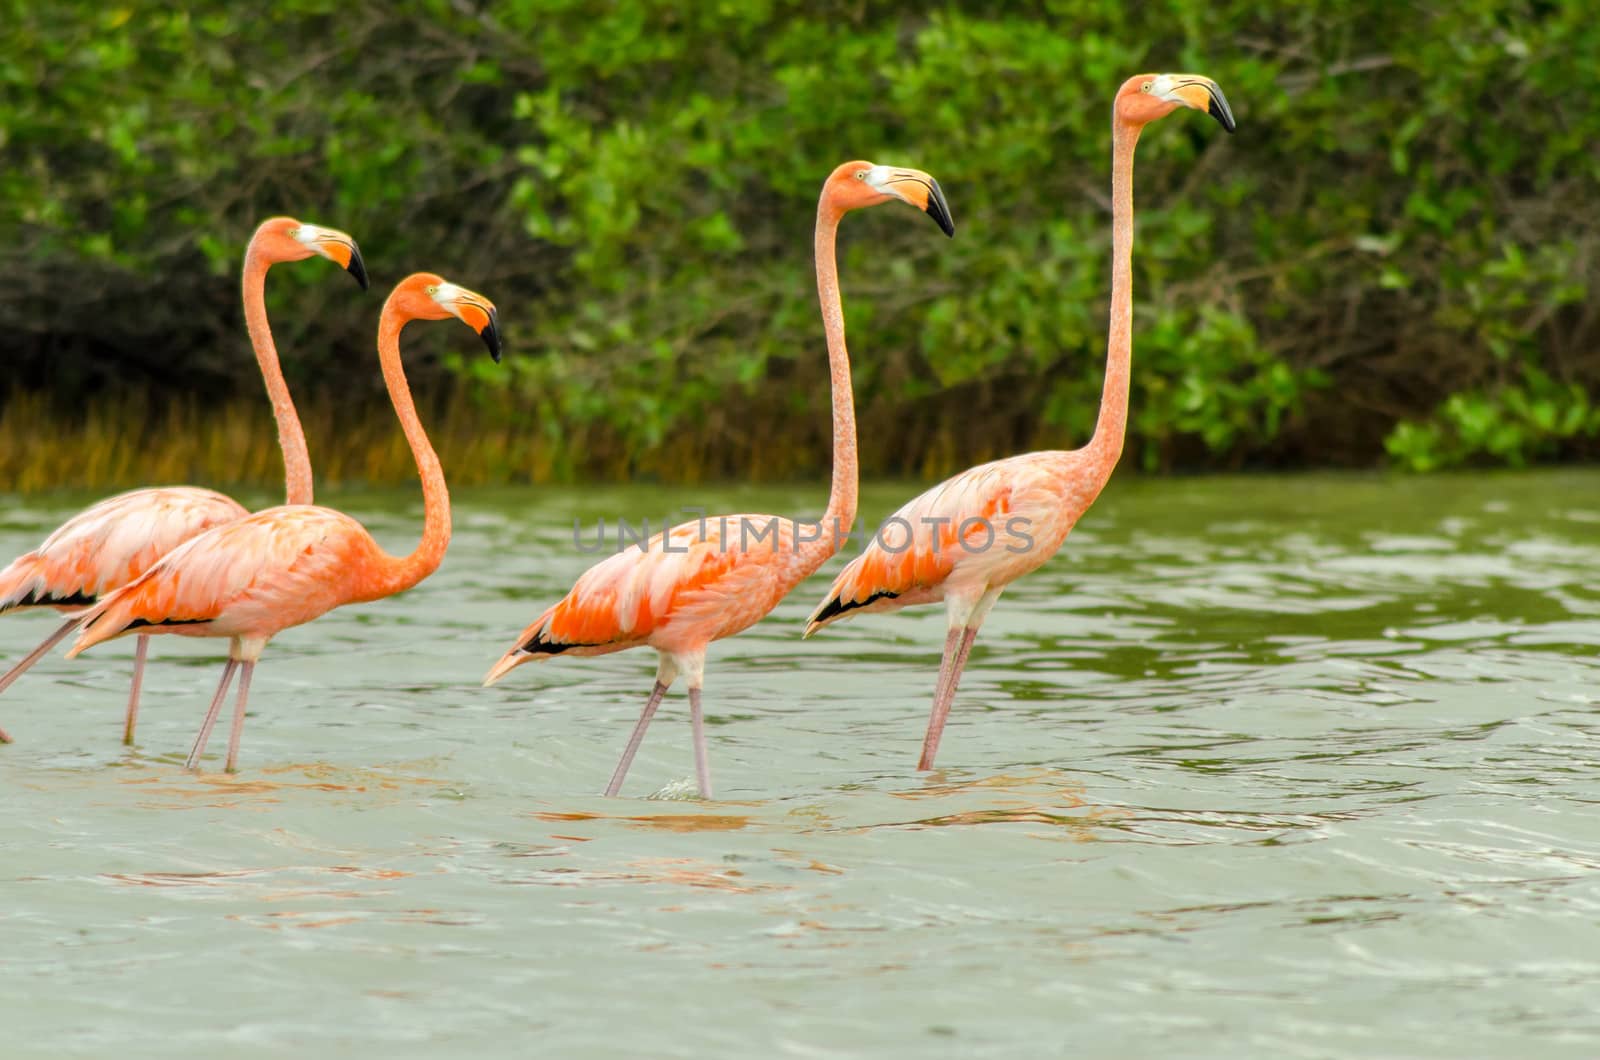 Walking Flamingos by jkraft5